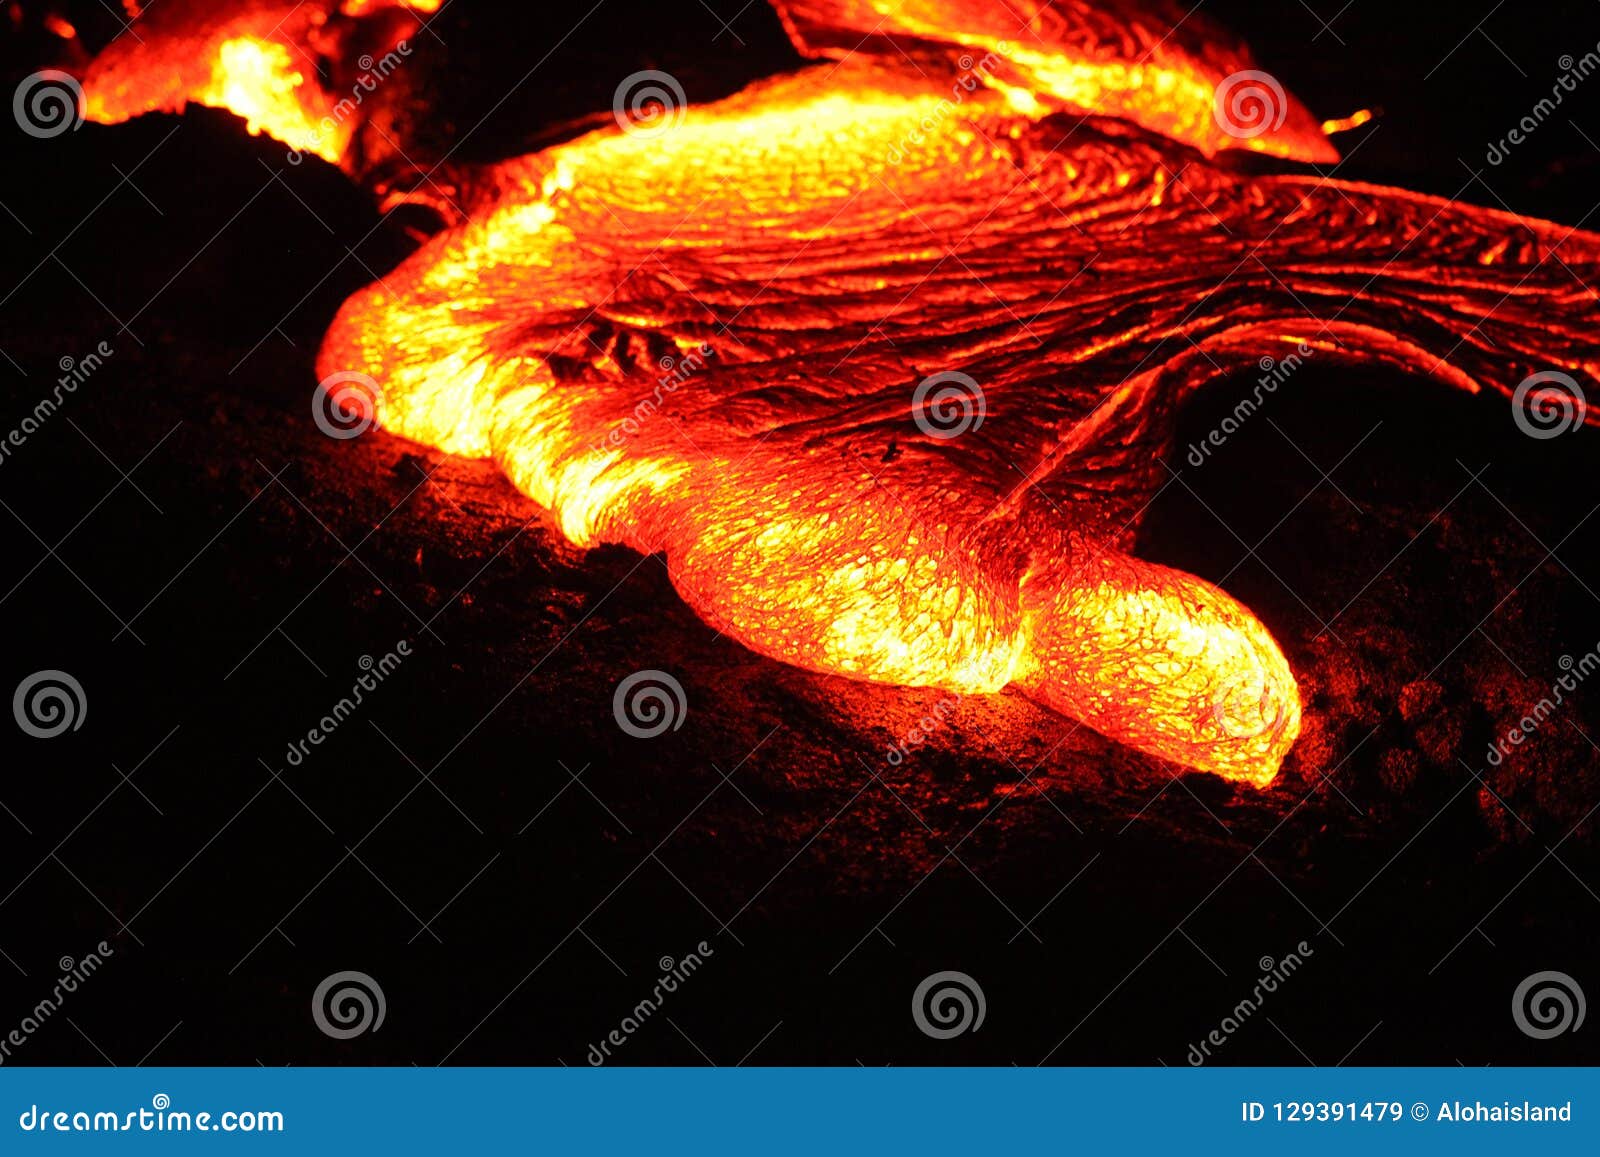 digital photography background of big island hawaii kilauea lava volcano flow